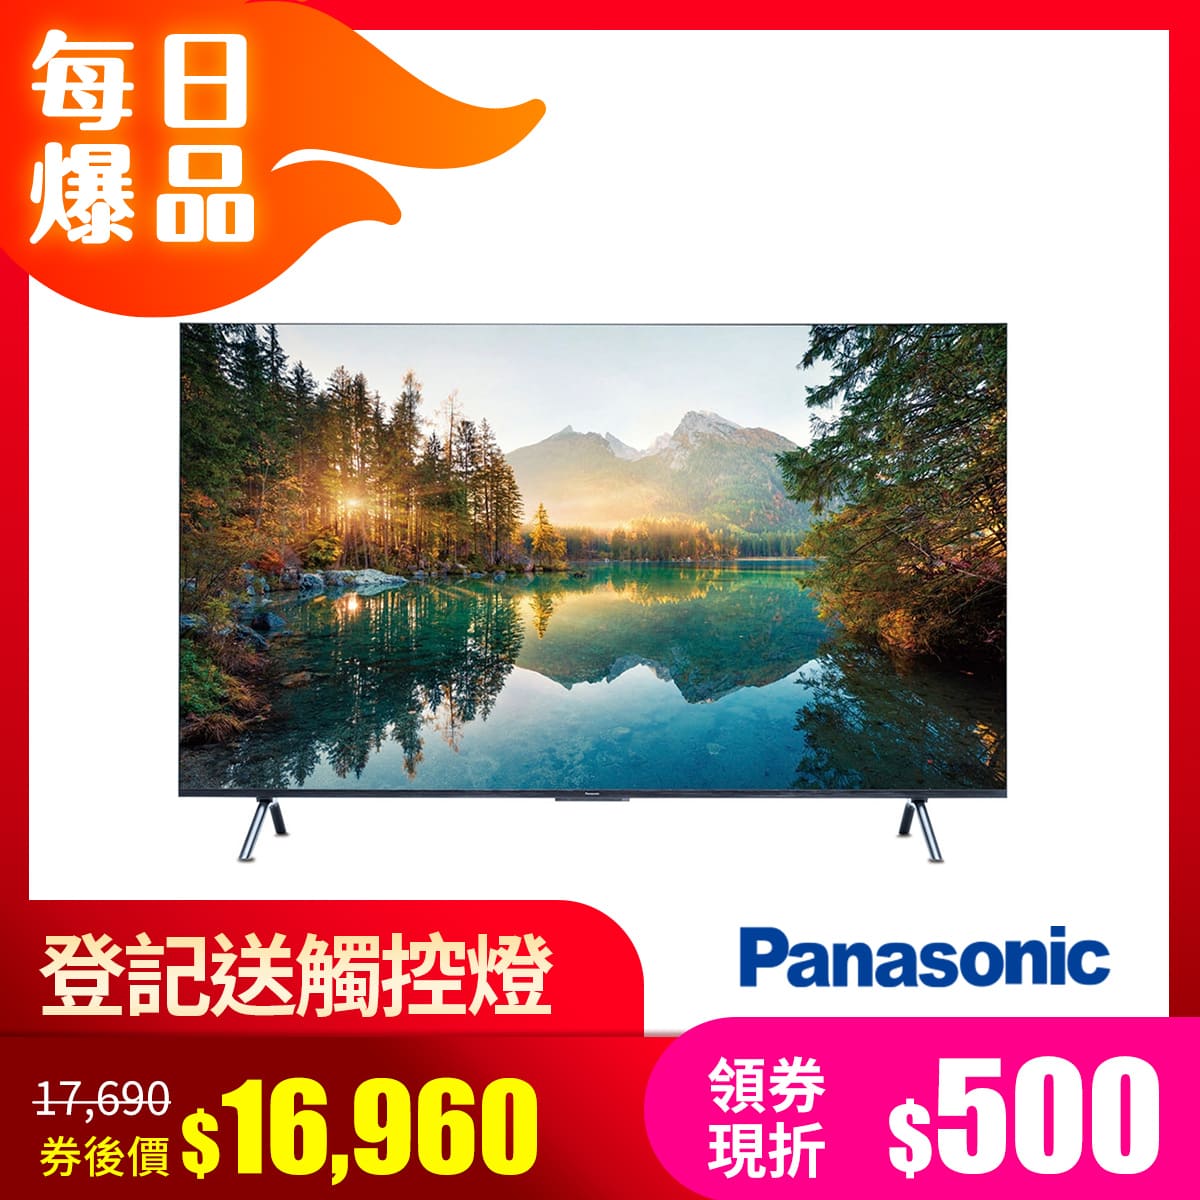 Panasonic 50型 4K六原色智慧聯網顯示器